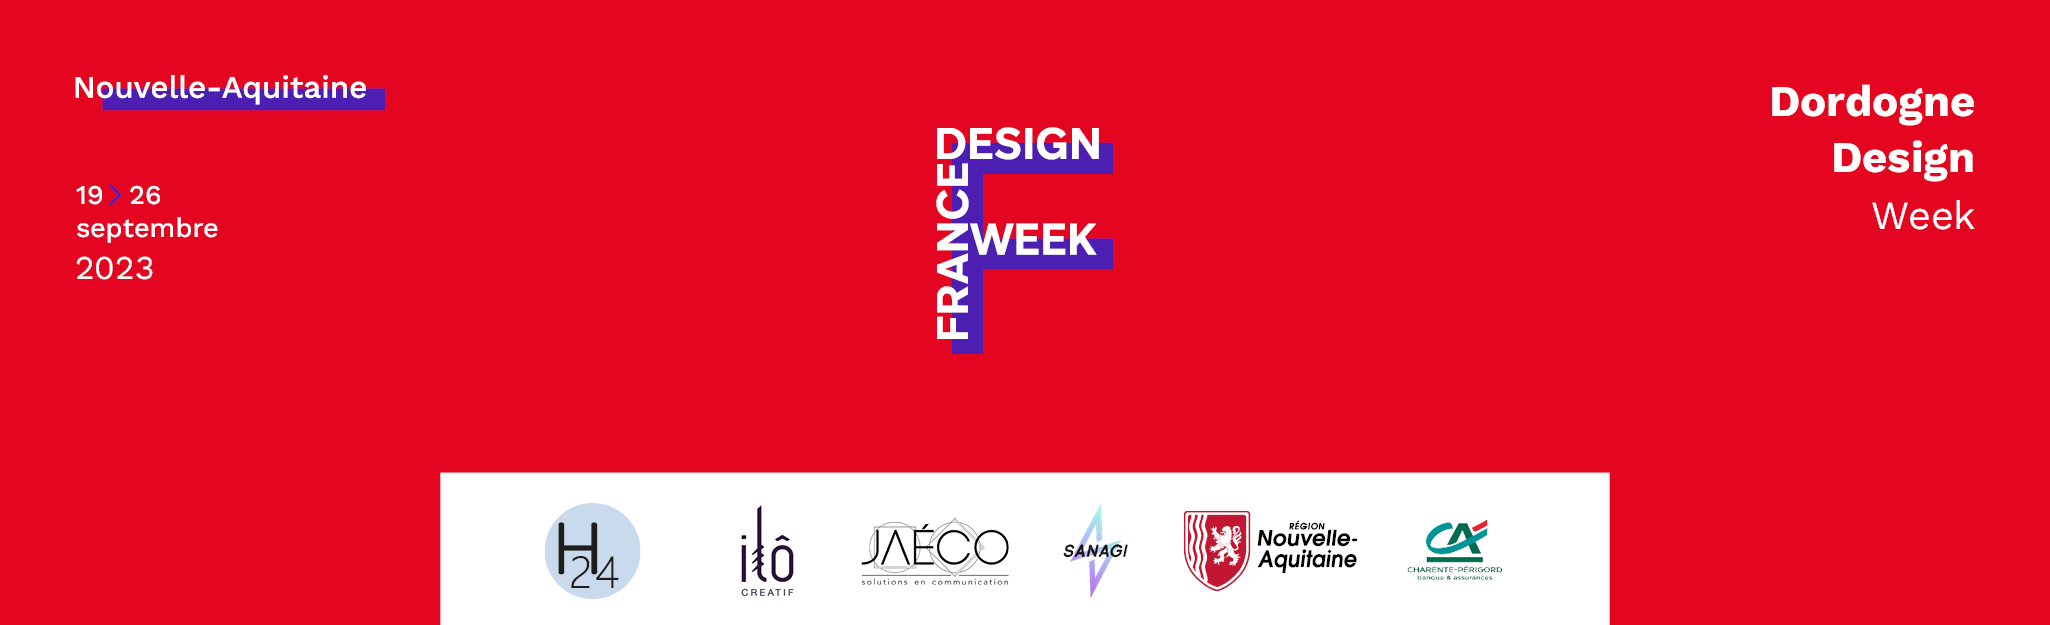 Dordogne Design Week